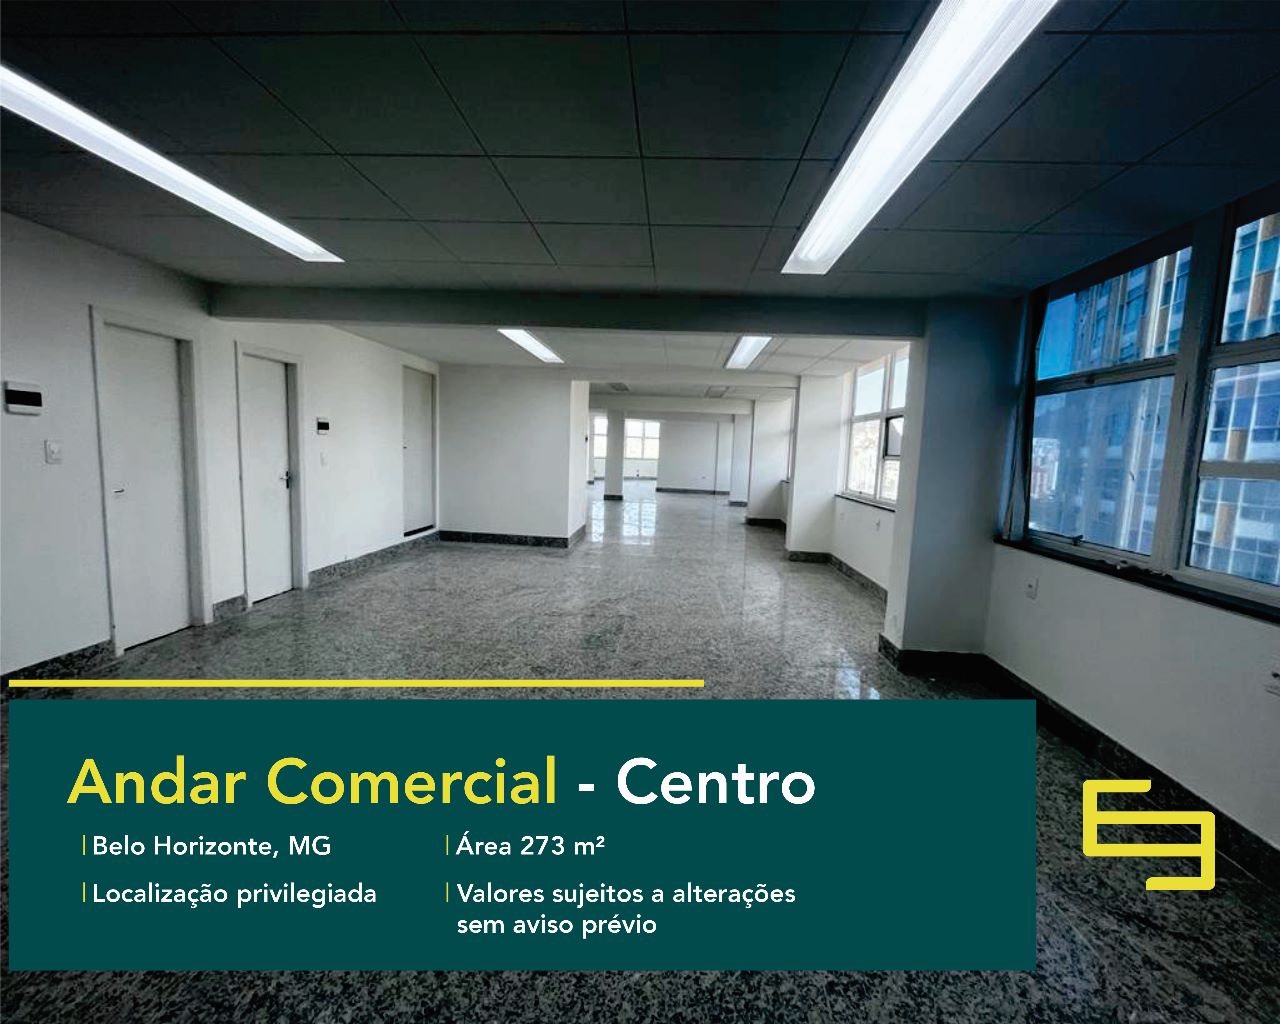 Sala comercial para alugar no Centro de Belo Horizonte, excelente localização. O ponto comercial conta, sobretudo, com área de 273 m².